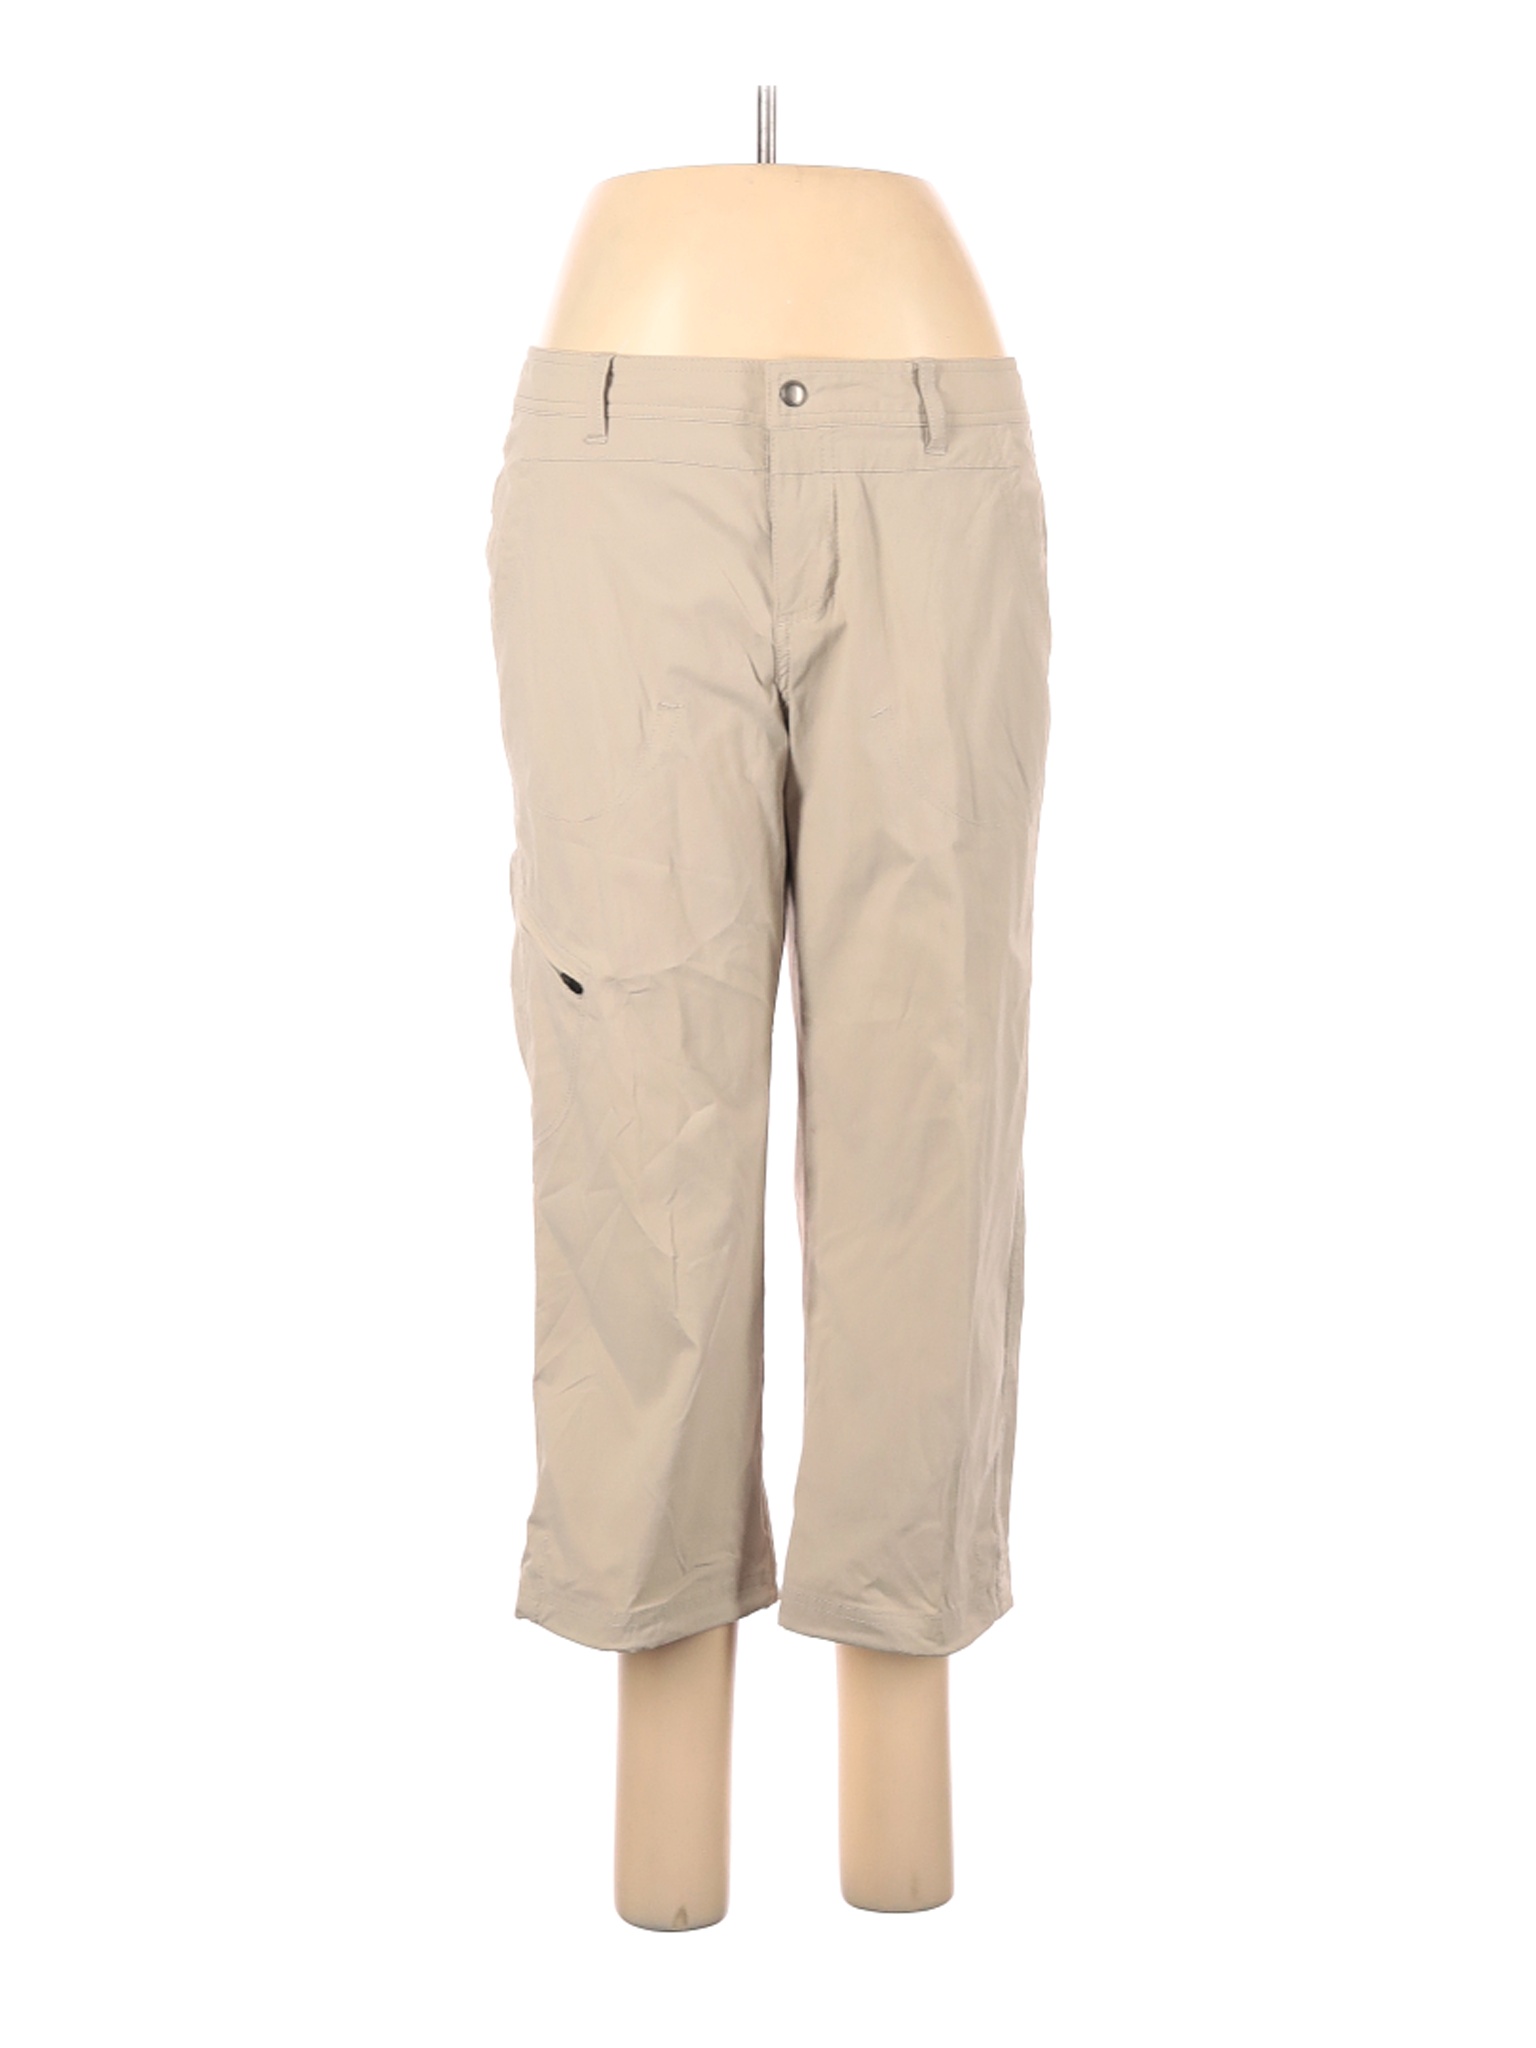 Eddie Bauer Women Brown Cargo Pants 8 | eBay